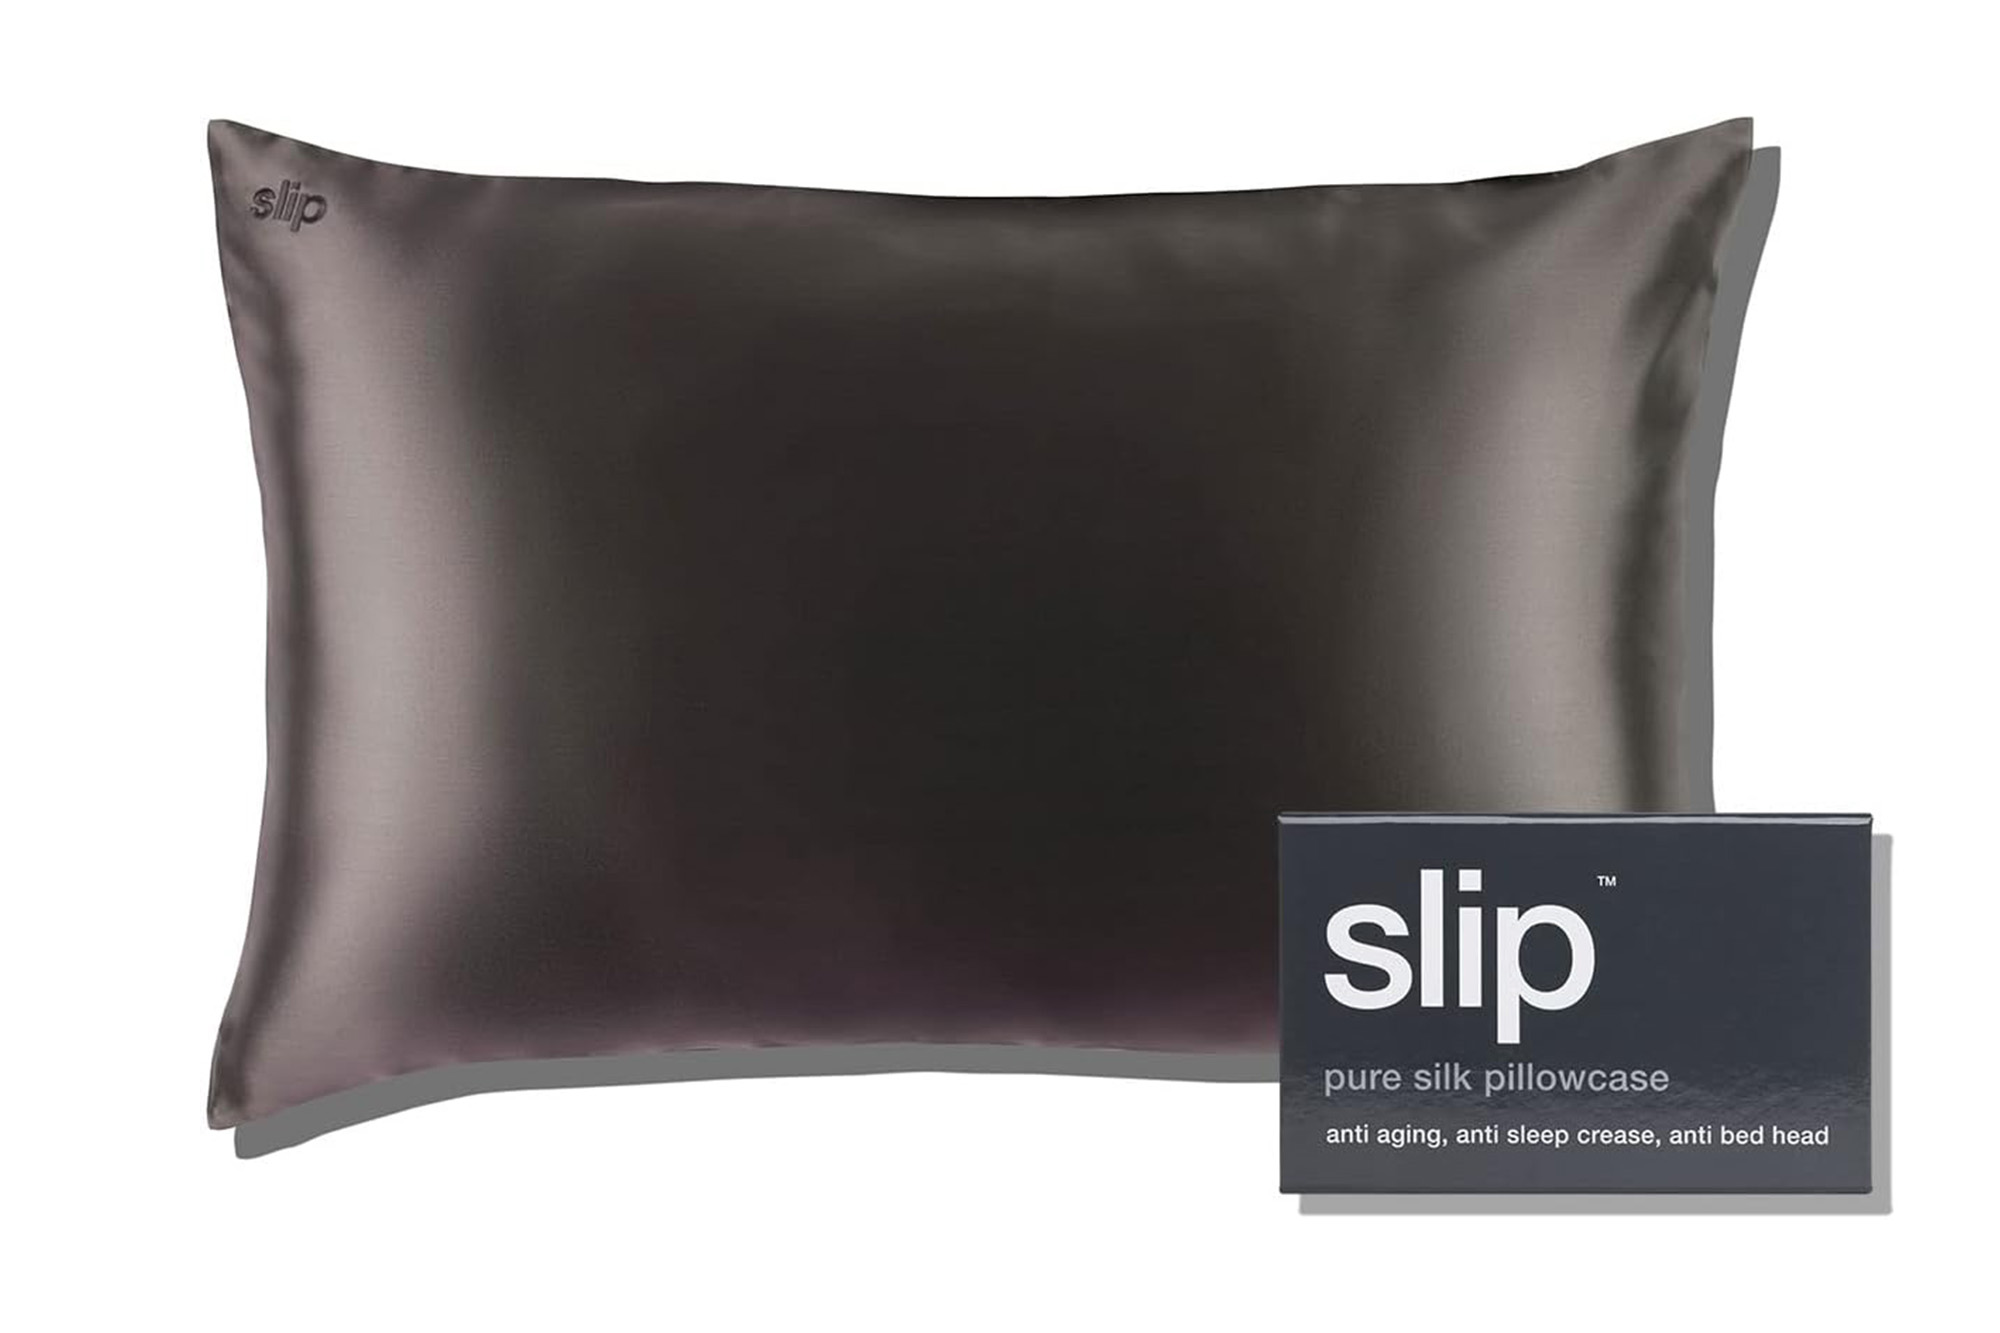 A silk pillowcase